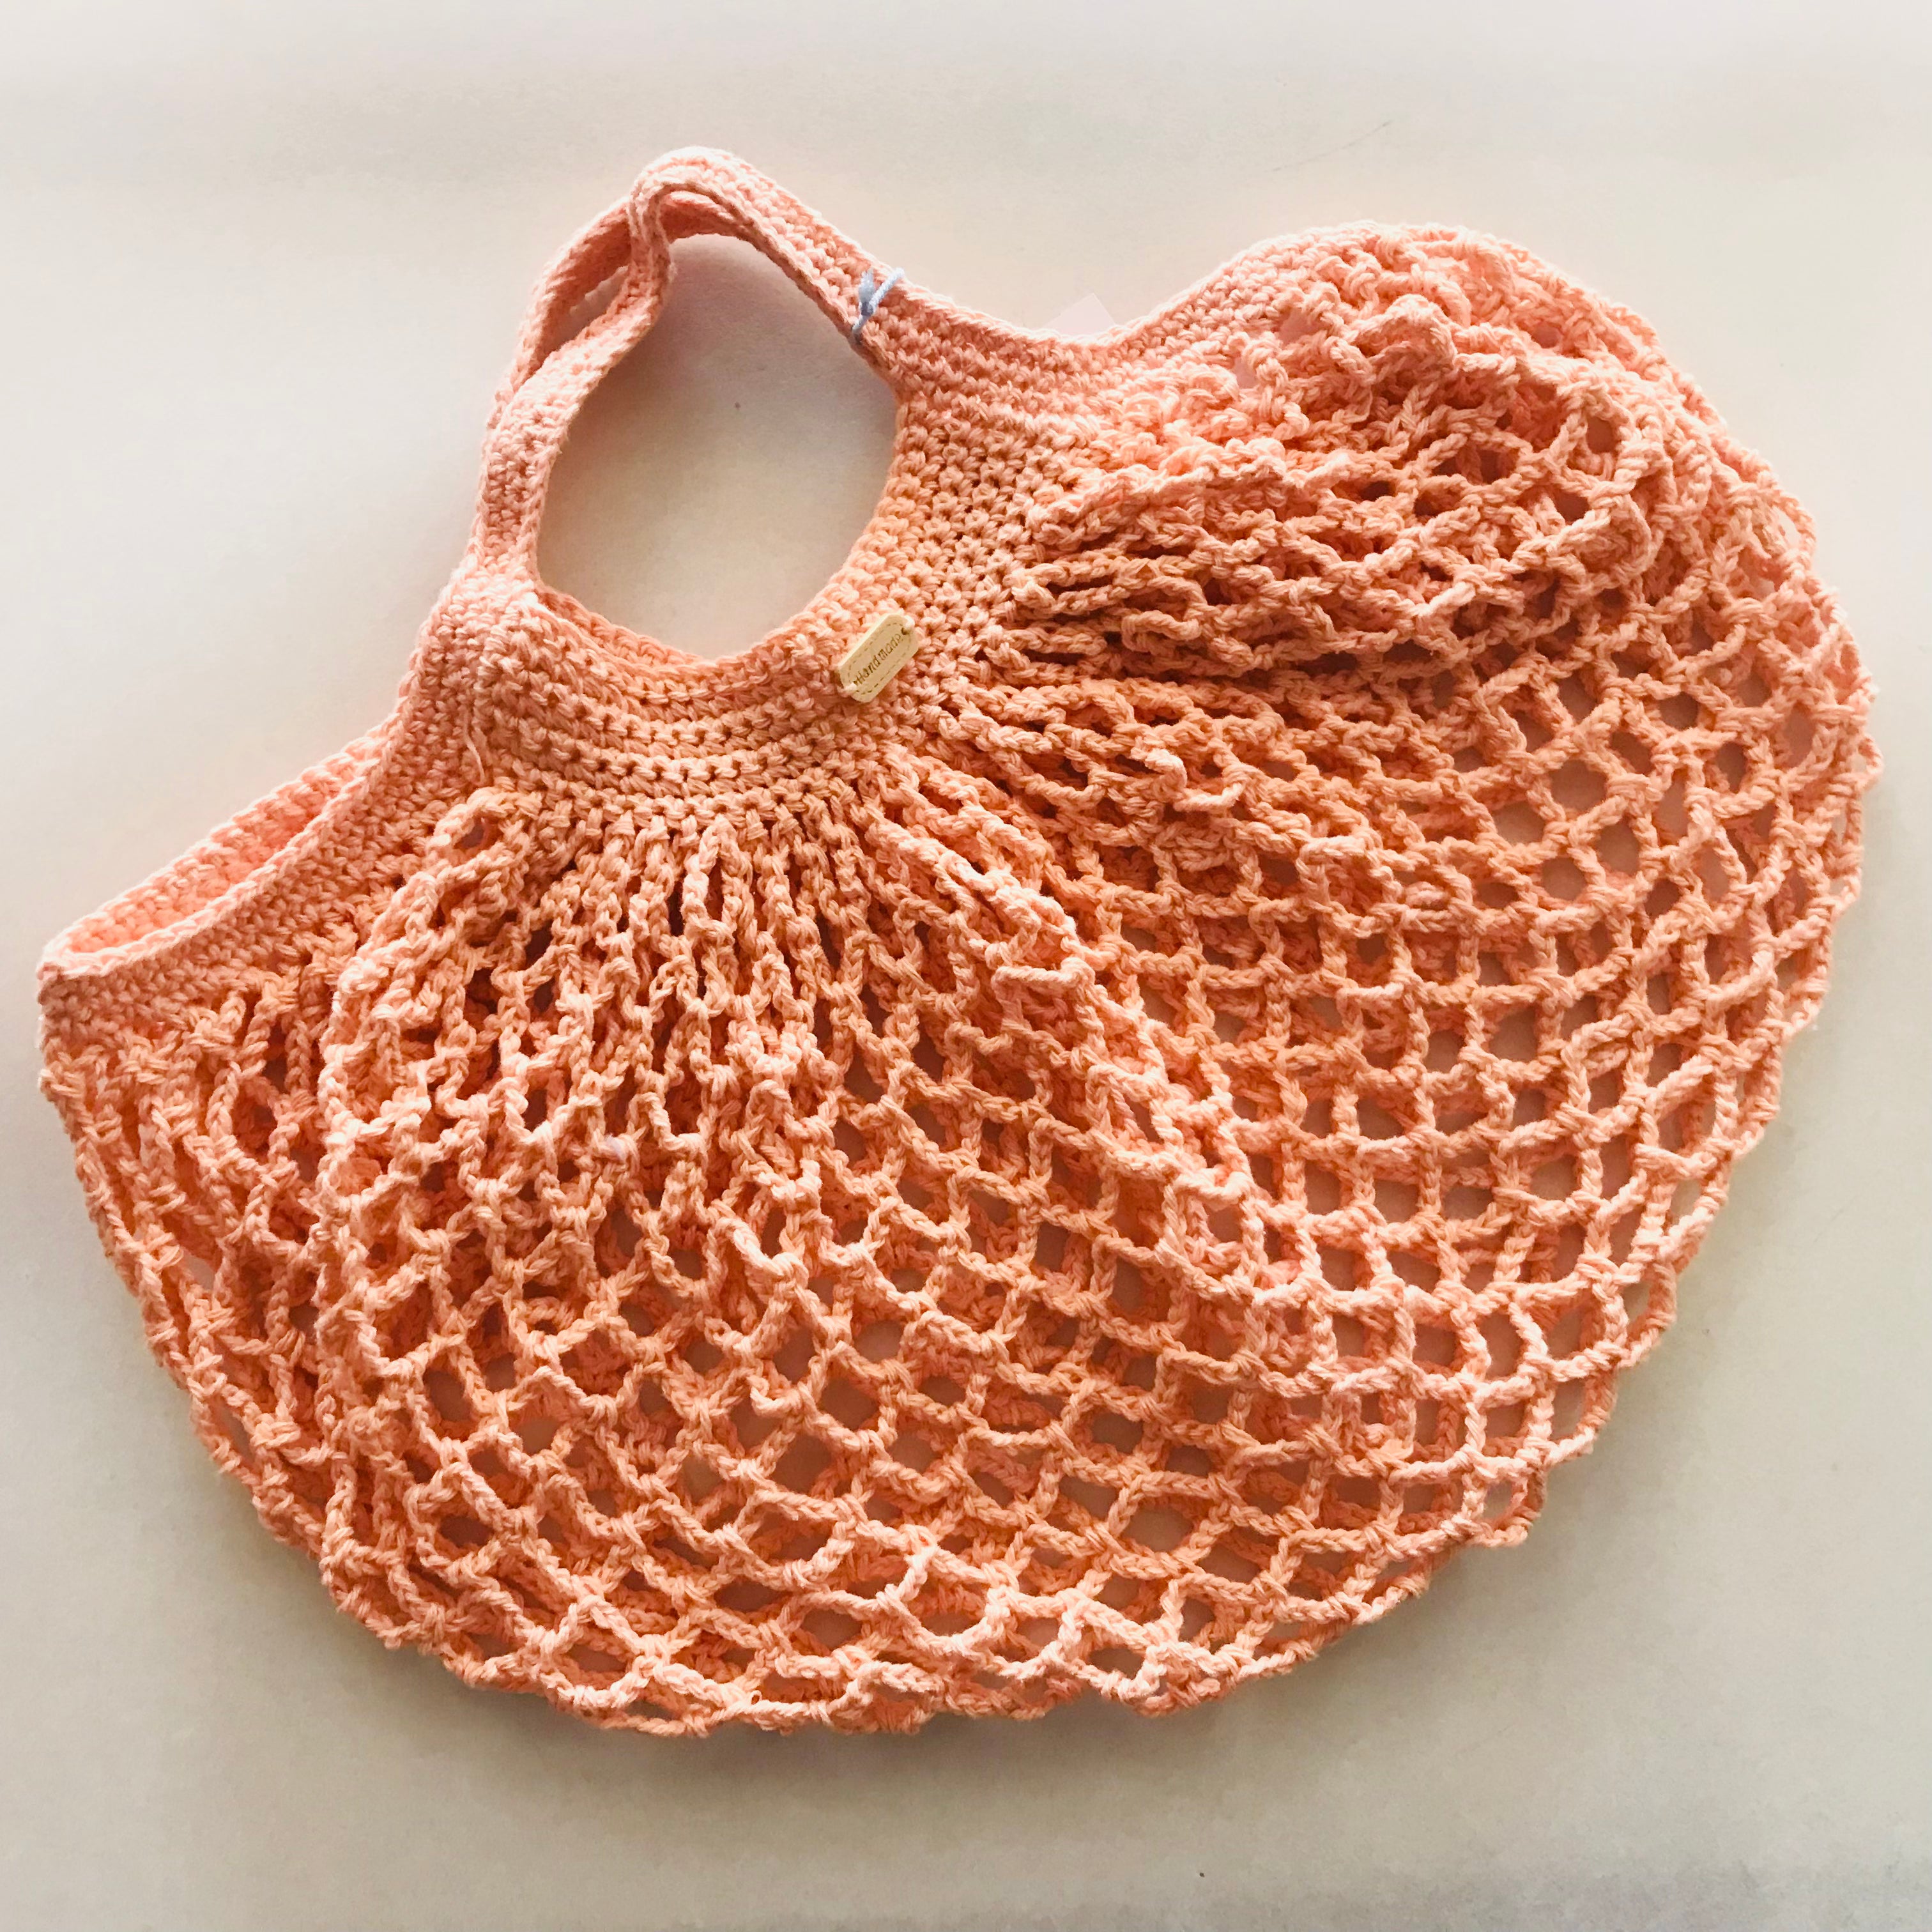 Crochet Eco Reusable Shopping Bag